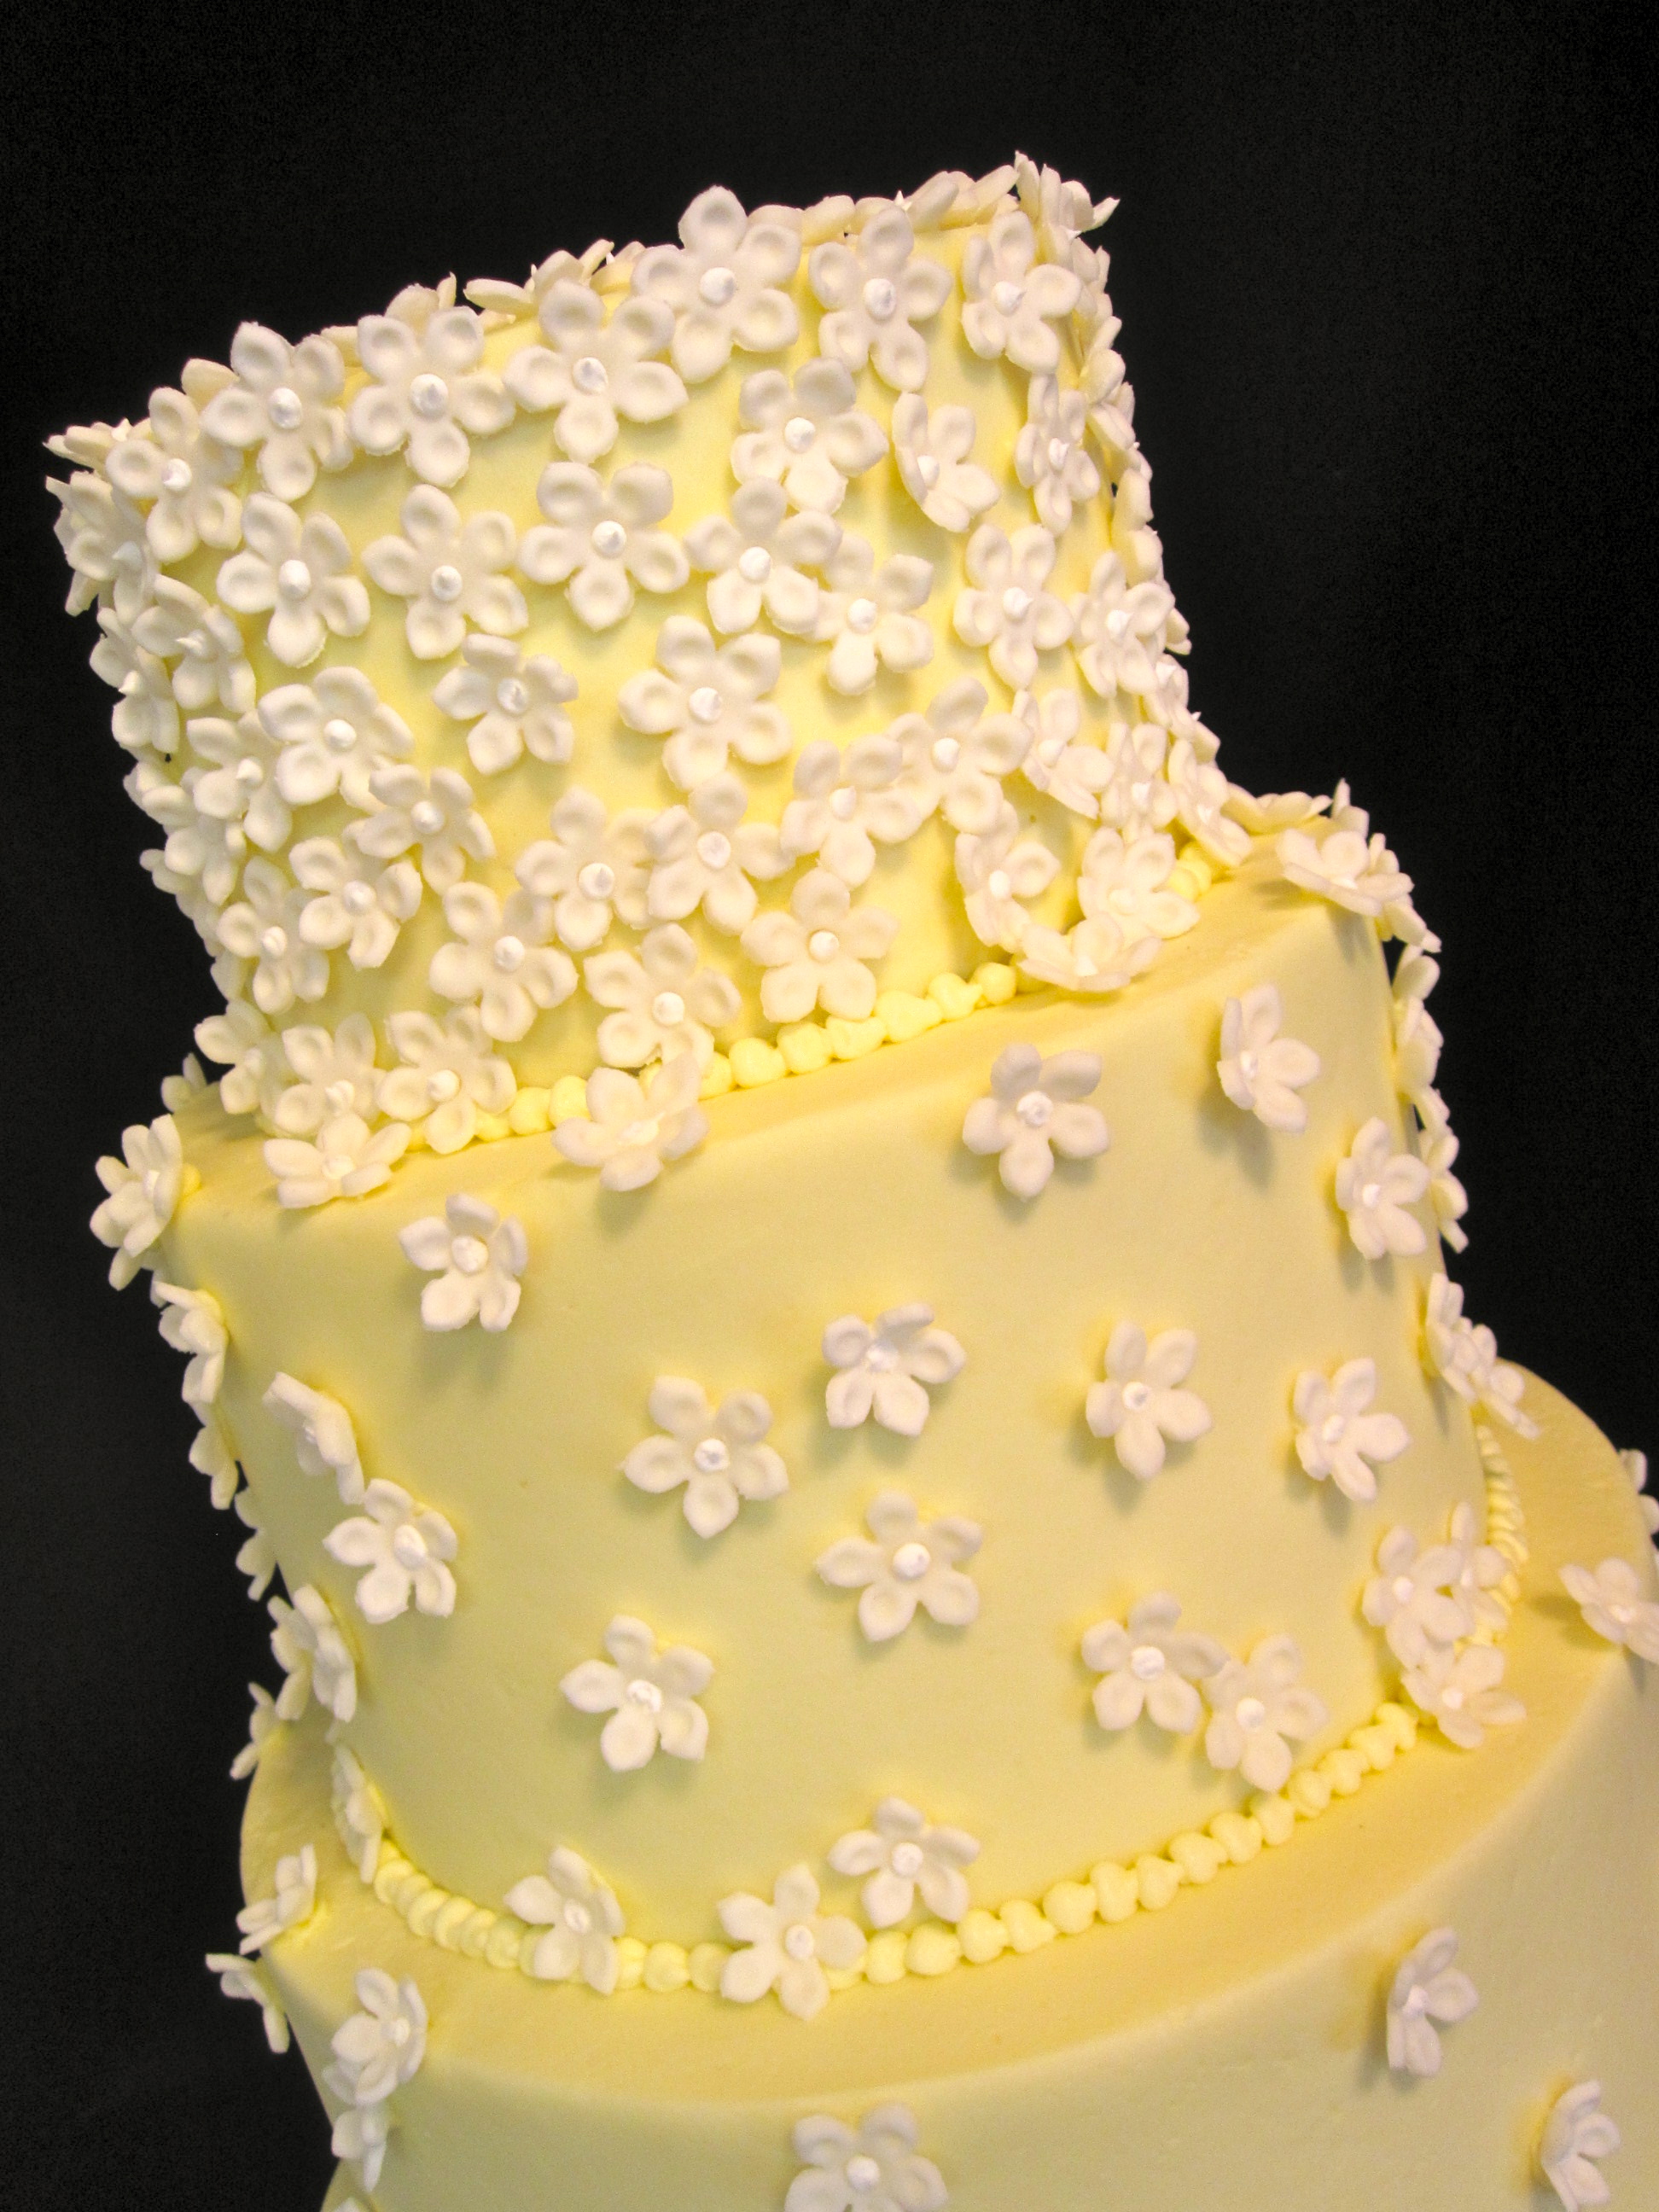 White Wedding Cake with Fondant Flowers